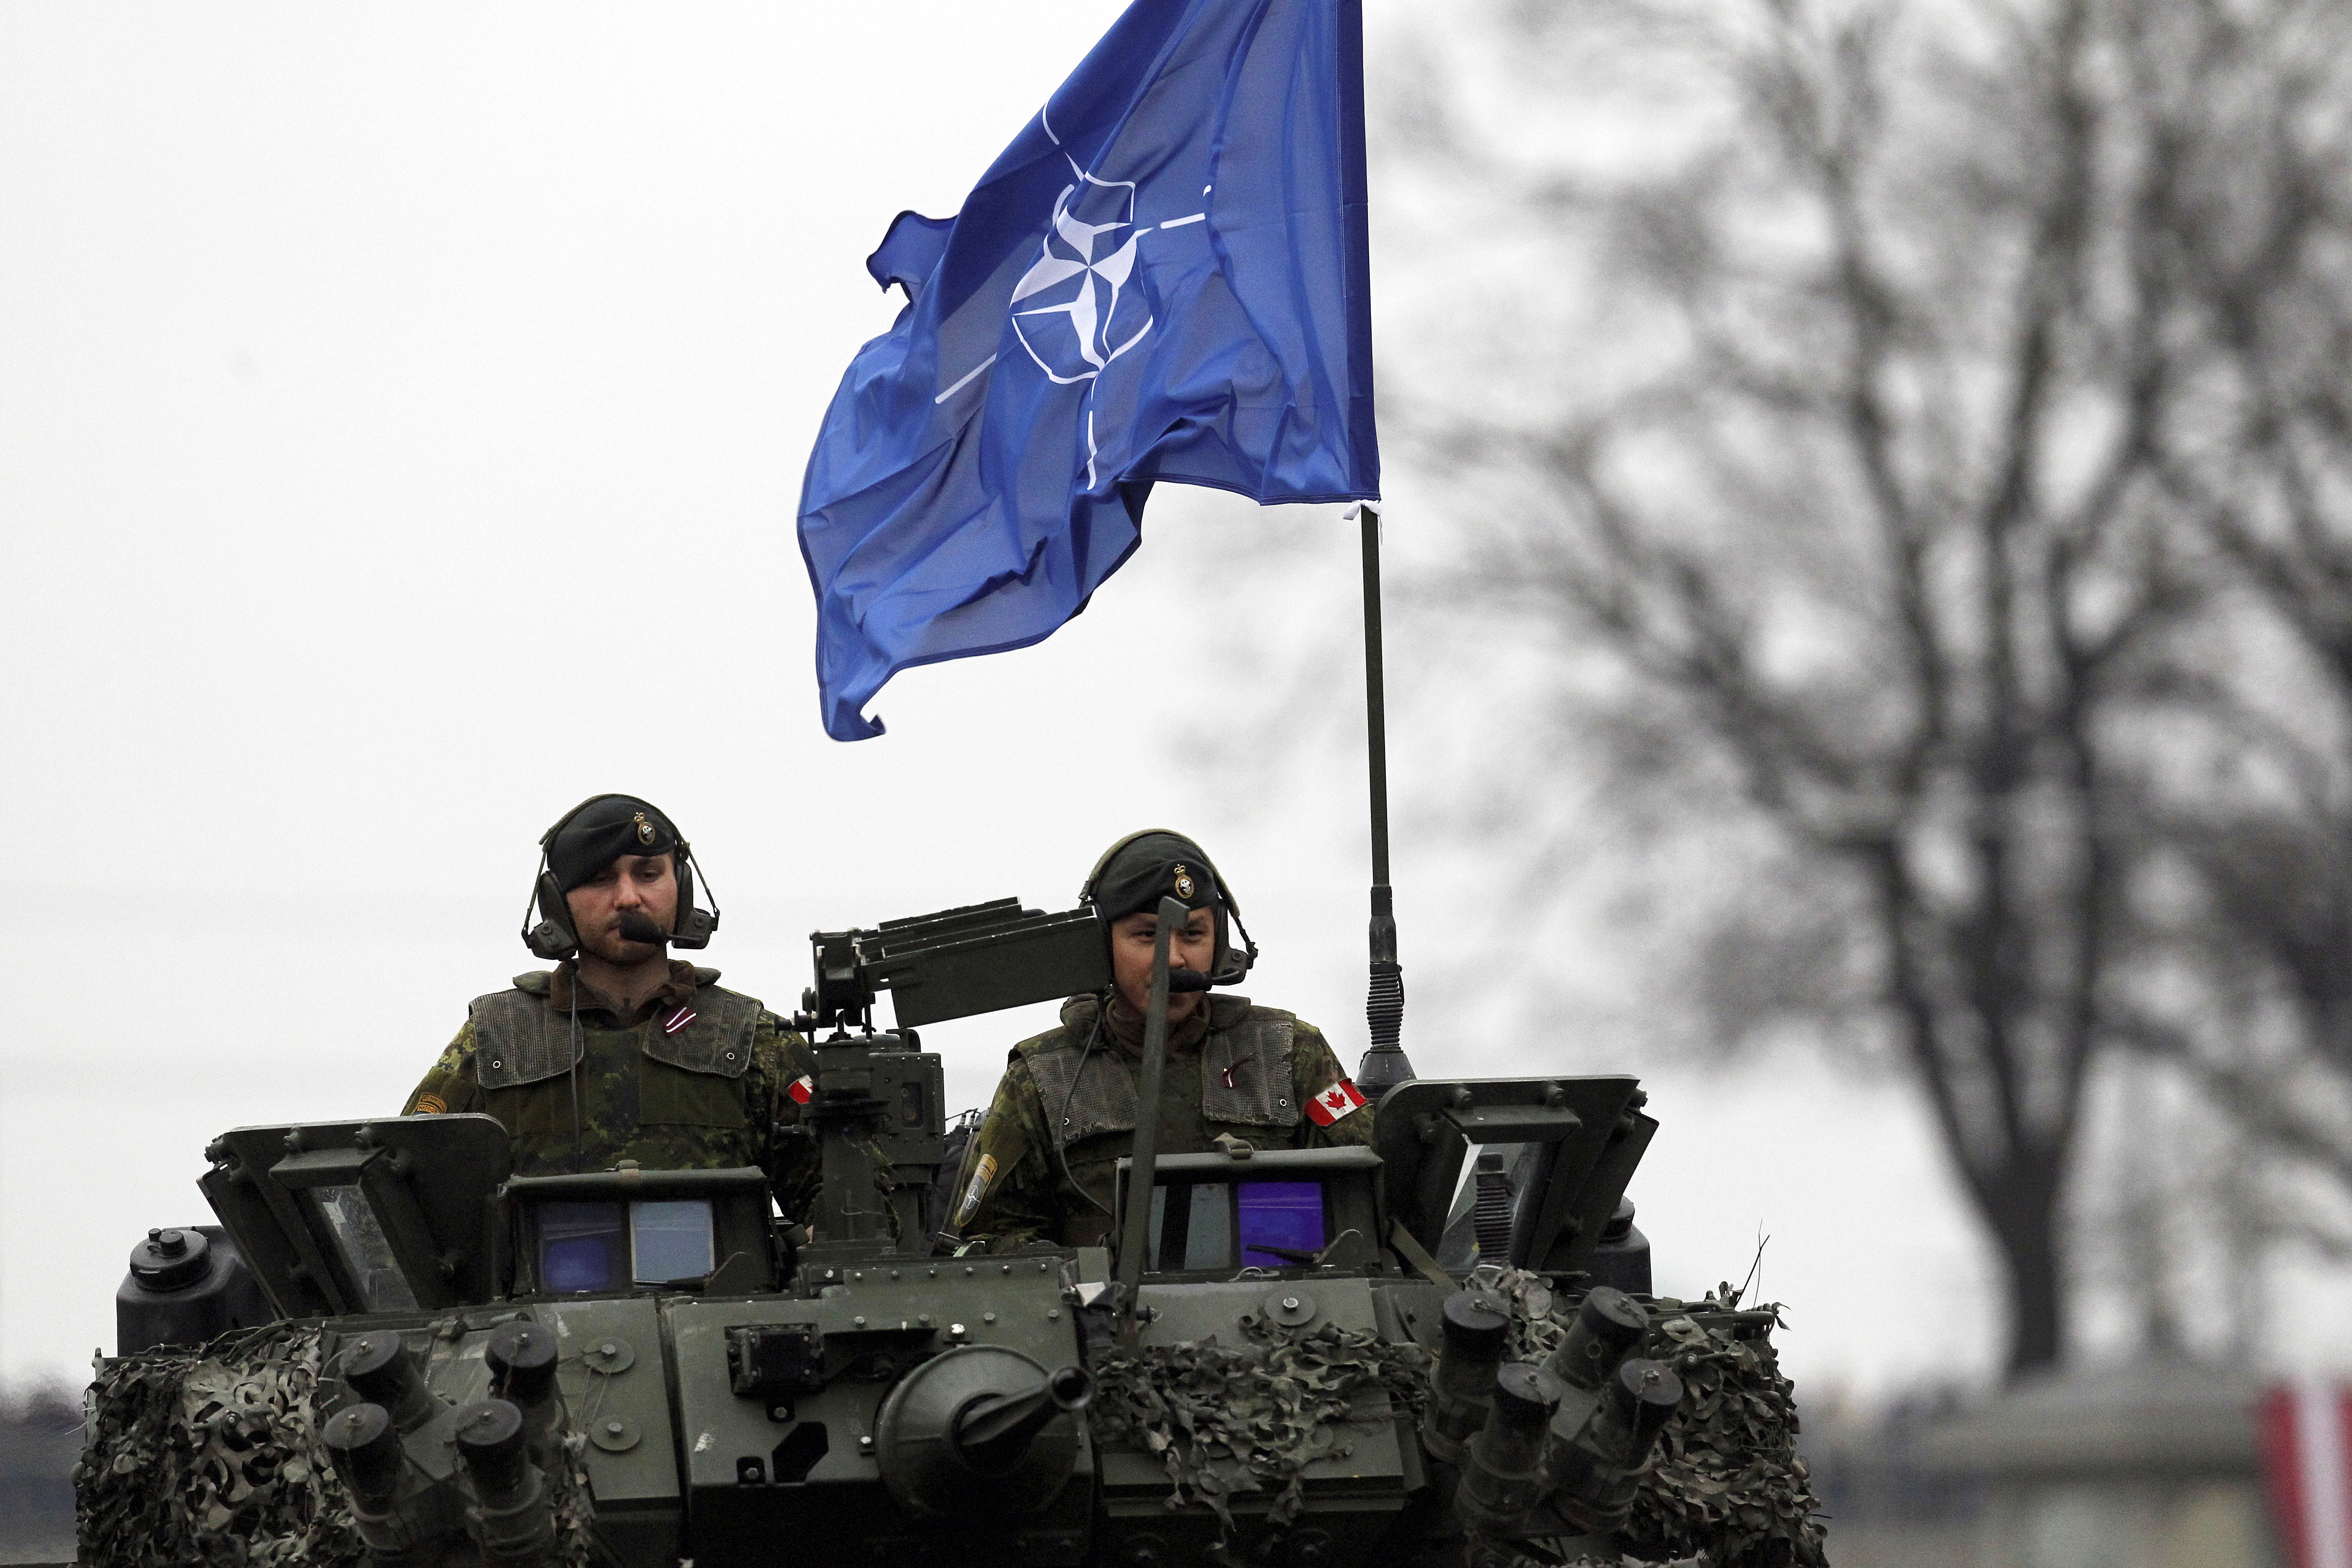 Нато нападет на украину. Учения НАТО 2022. Учения НАТО В Румынии 2022. Военная доктрина НАТО. Армия НАТО учения.